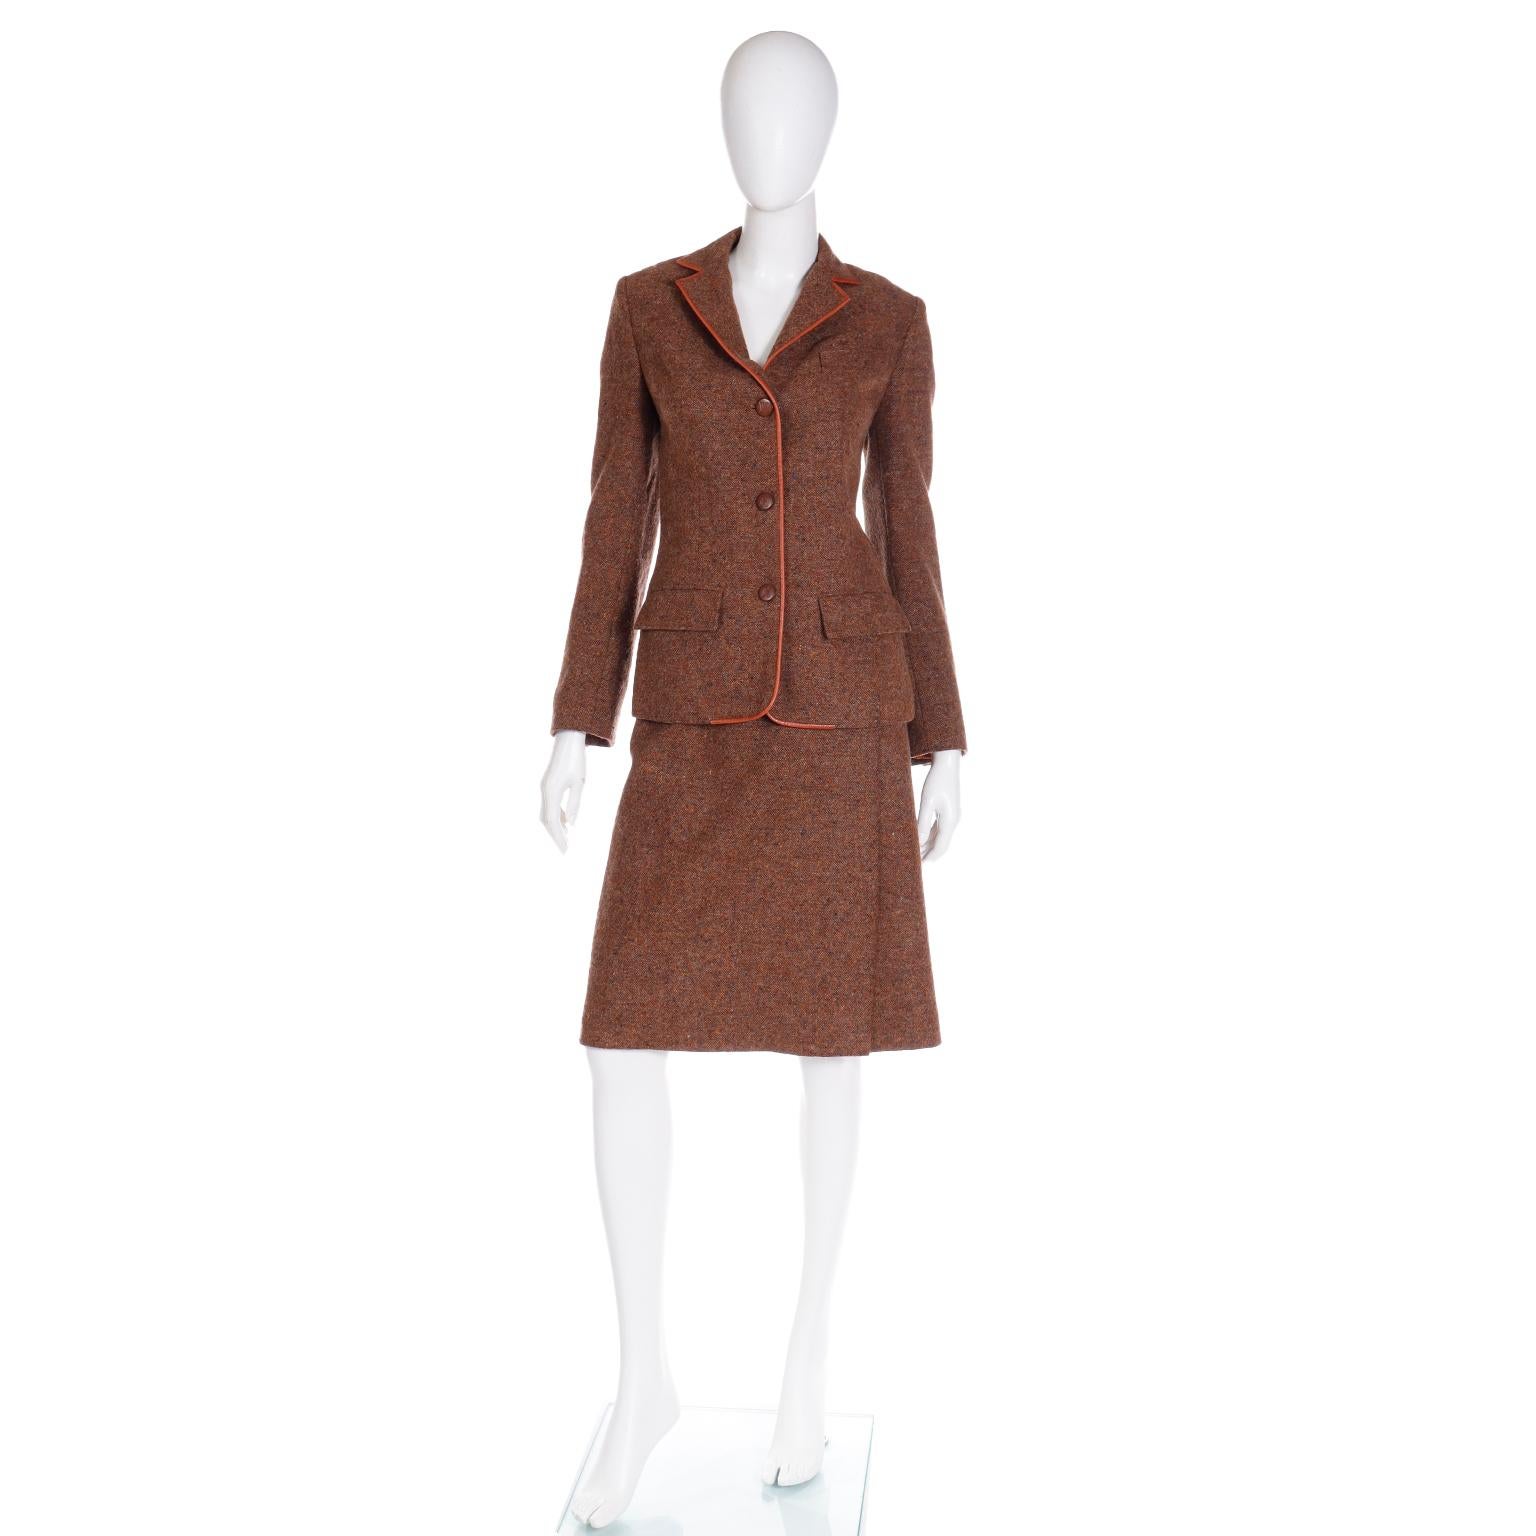 Voici un ensemble veste et jupe en tweed de laine marron Hermès des années 1970, avec de jolies garnitures en cuir.	Cette tenue rappelle le style équestre original d'Hermès et est d'une grande beauté. Nous adorons les vêtements vintage Hermès, en